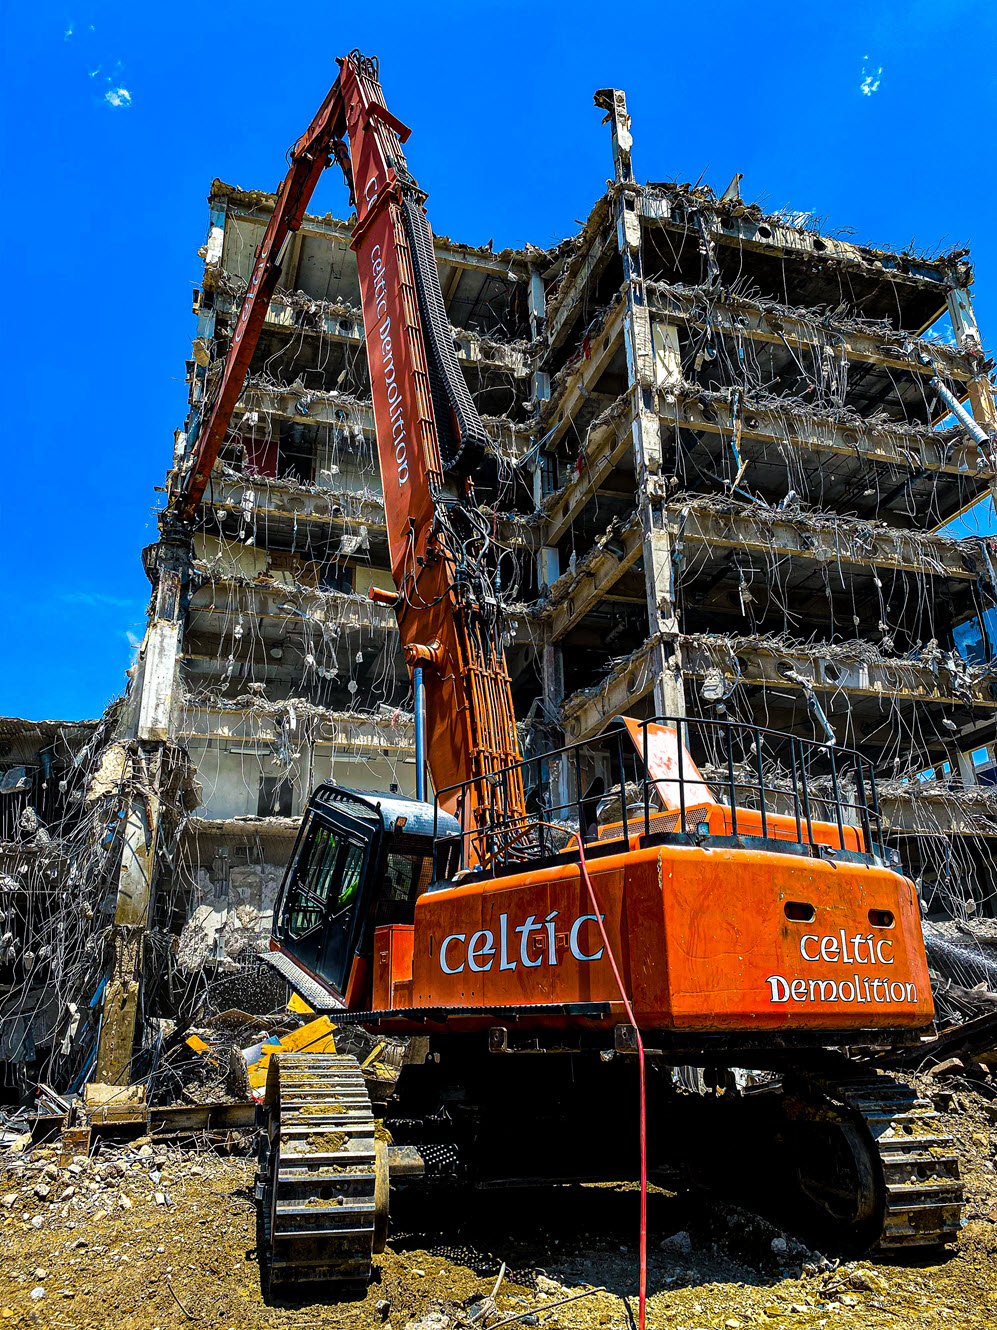 Celtic Demolition - Australian Embassy